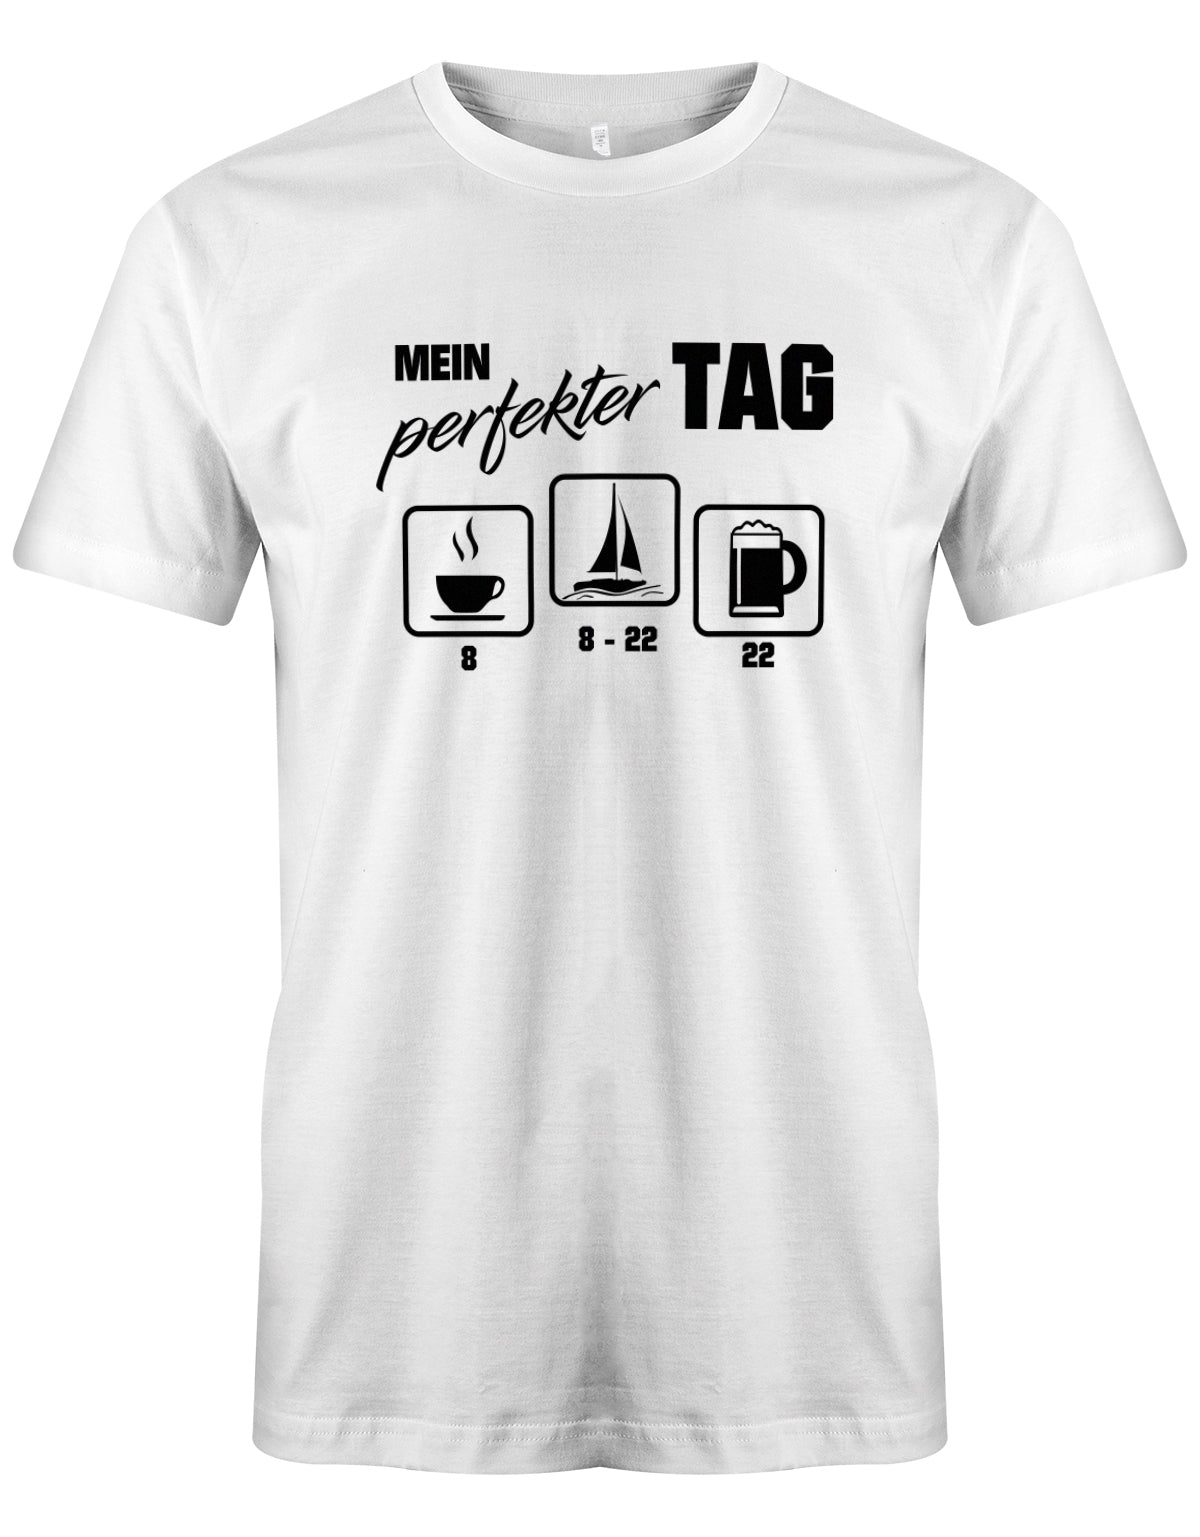 Das lustige Segler t-shirt bedruckt mit "Mein perfekter Tag - 8 Uhr Kaffee von 8-22 Uhr segeln und 22 Uhr Bier ". Weiss